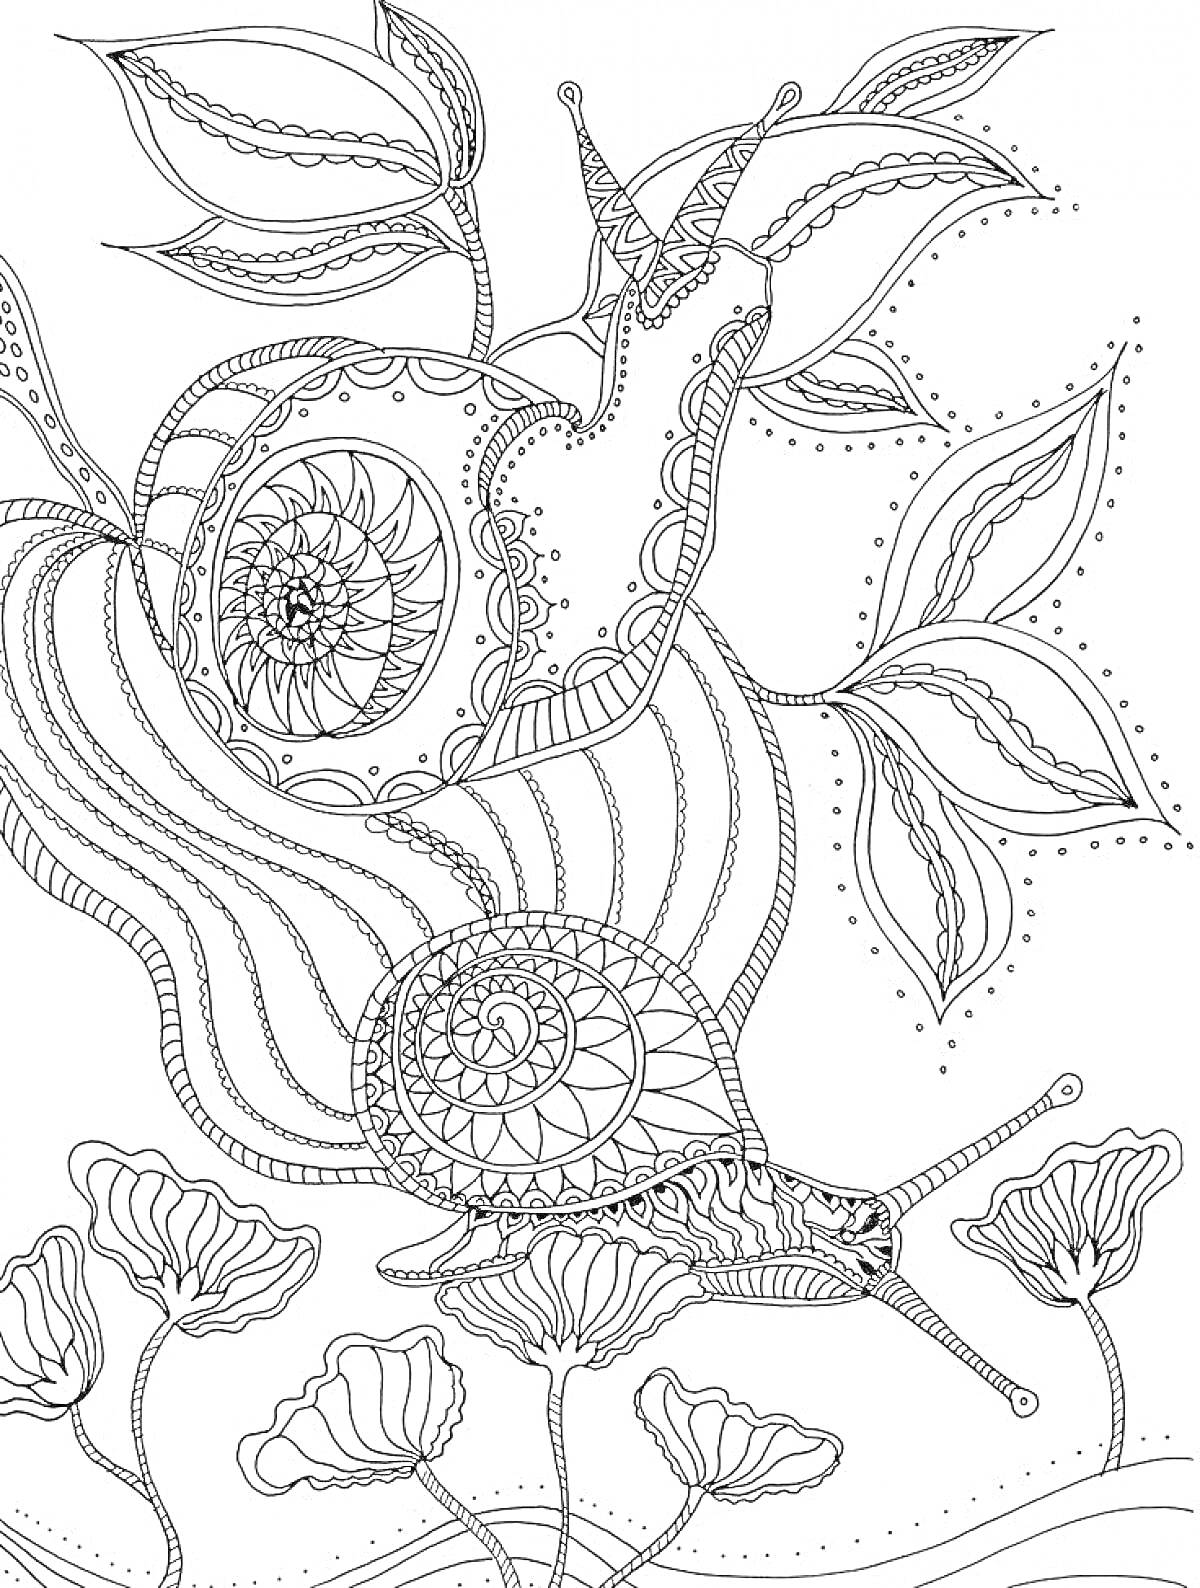 Раскраска Улитка на фоне листьев и цветов с узорами для антистресса